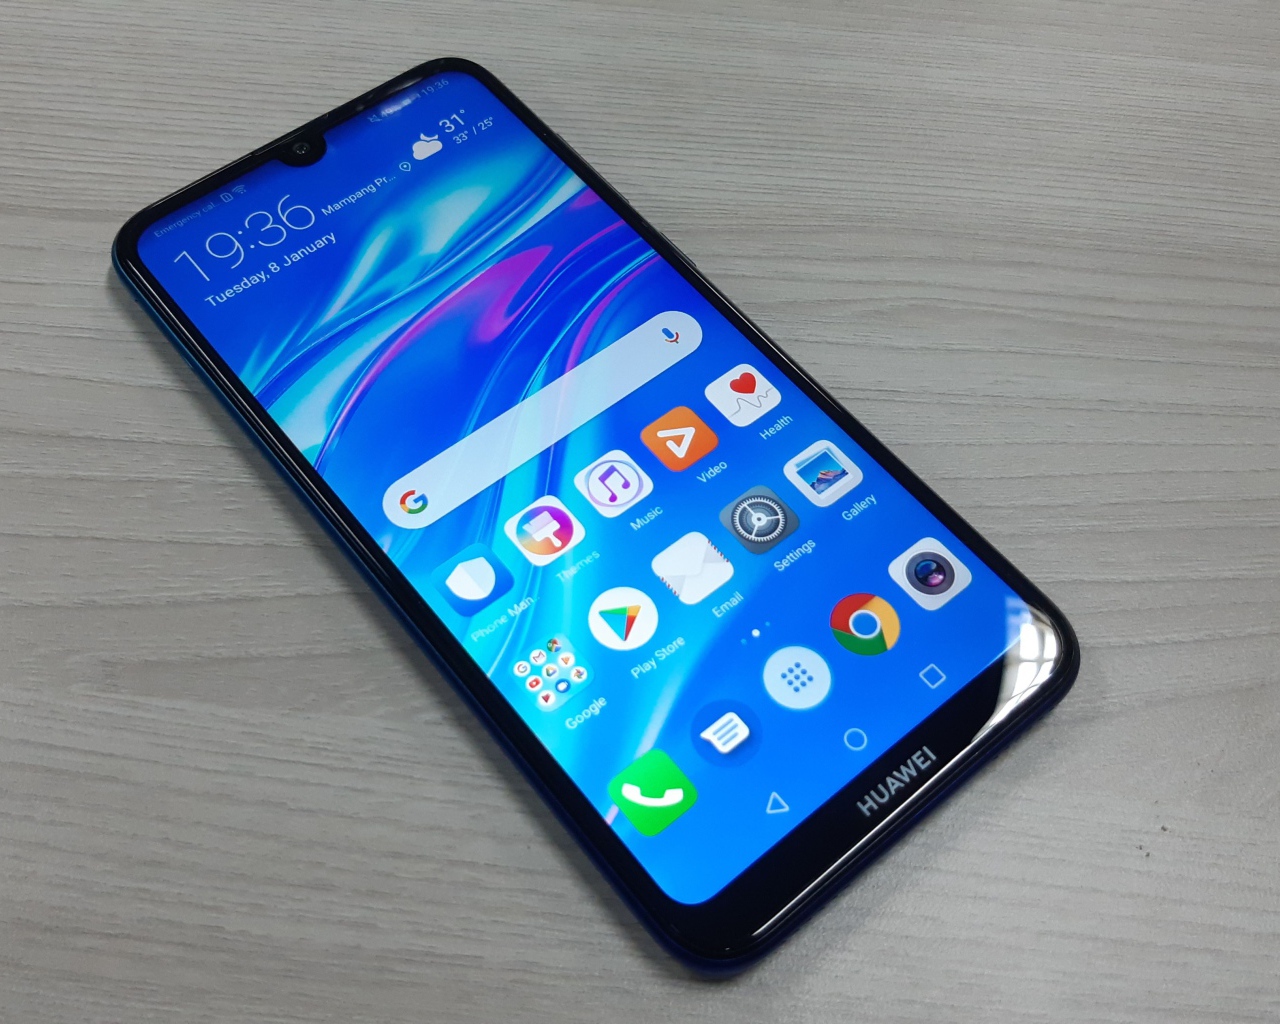 Смартфон Huawei Y7 Pro, 2019 года лежит на деревянном столе